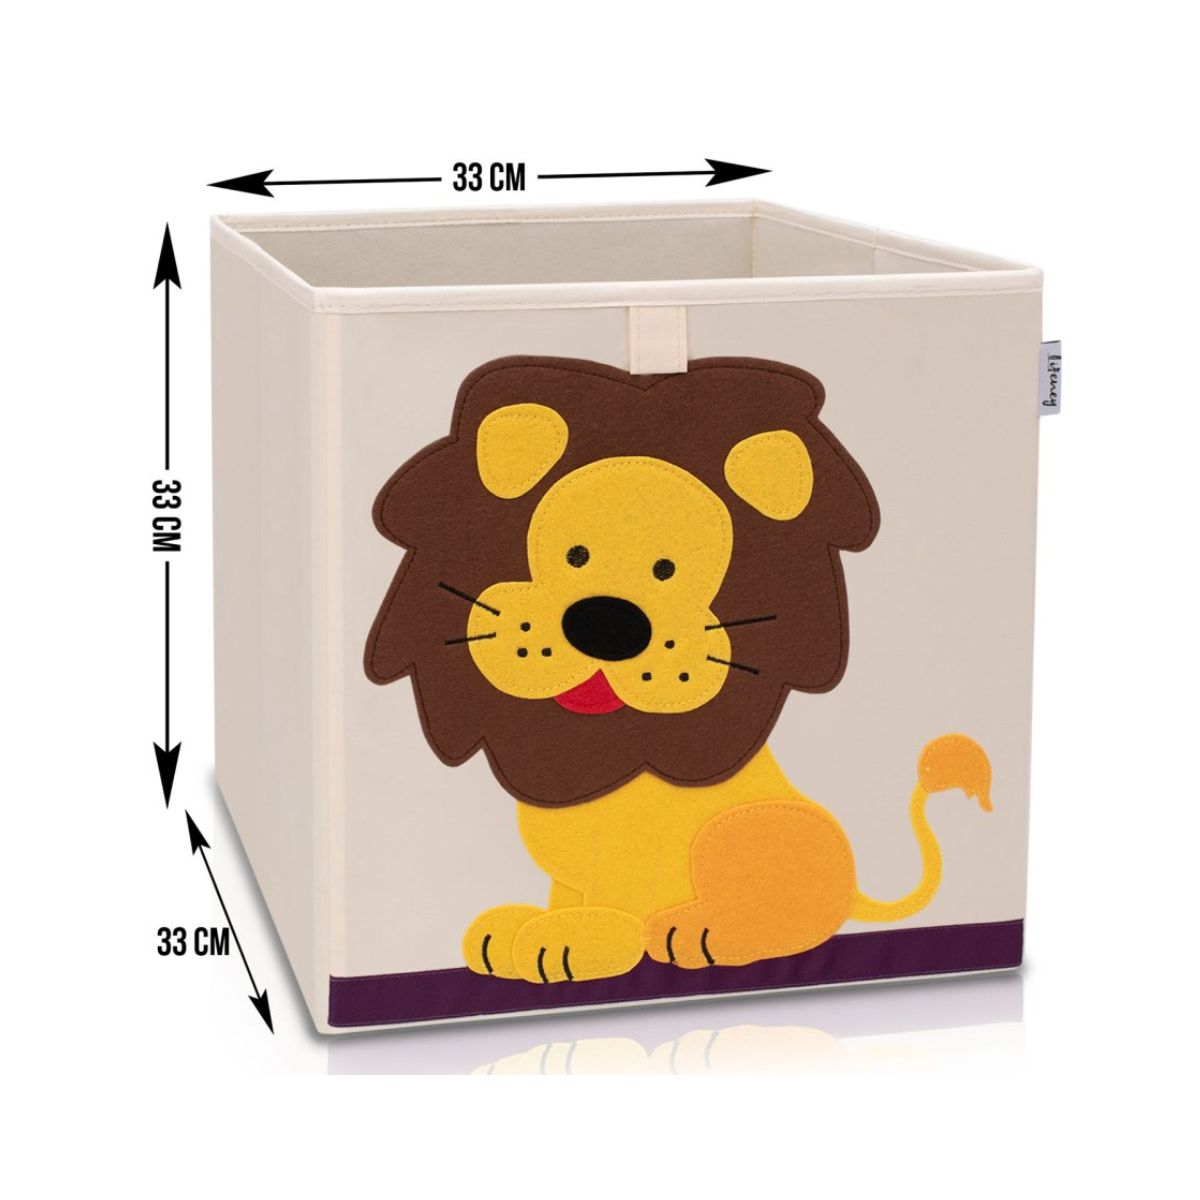 Boîte de rangement "lion" sur fond clair, compatible avec l'étagère IKEA KALLAX Lifeney